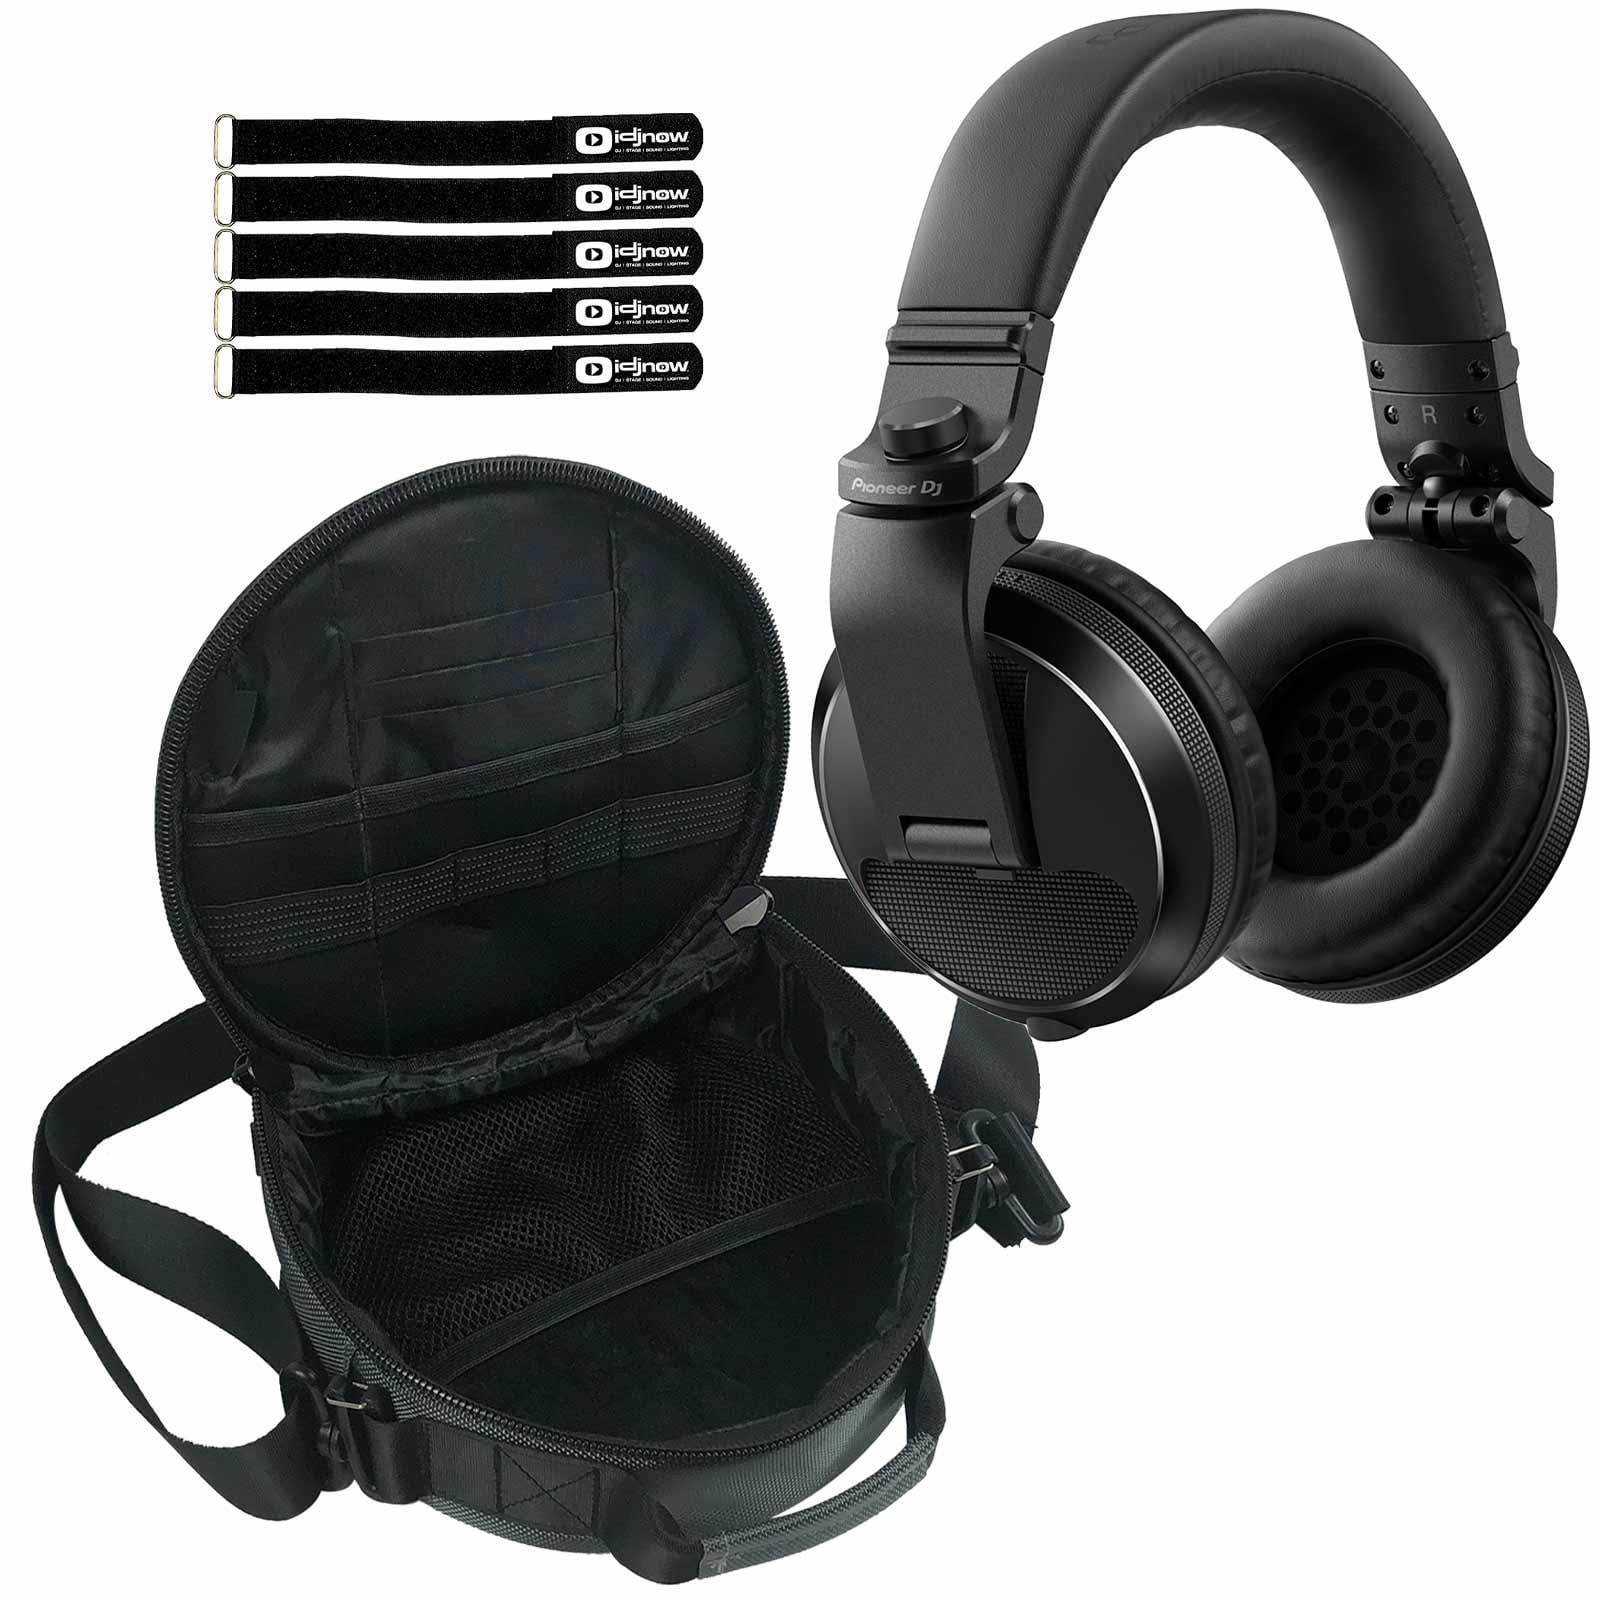 Gear Headphone Headphones DJ Bag Pioneer with Black Over-ear Package HDJ-X5 DJ